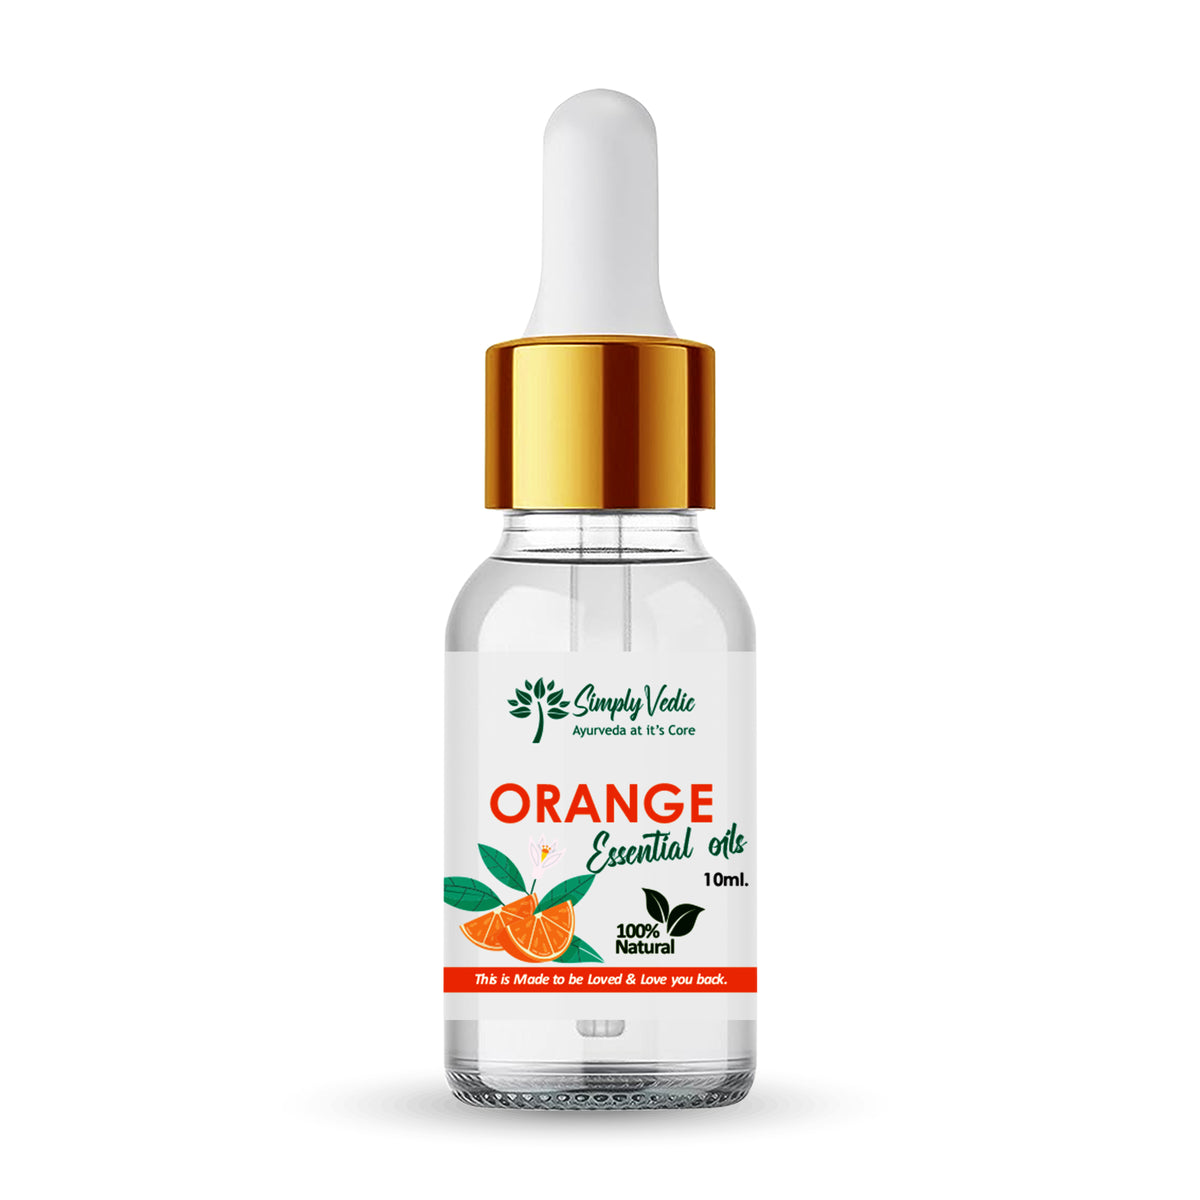 Simply Vedic Orange Essential Oil